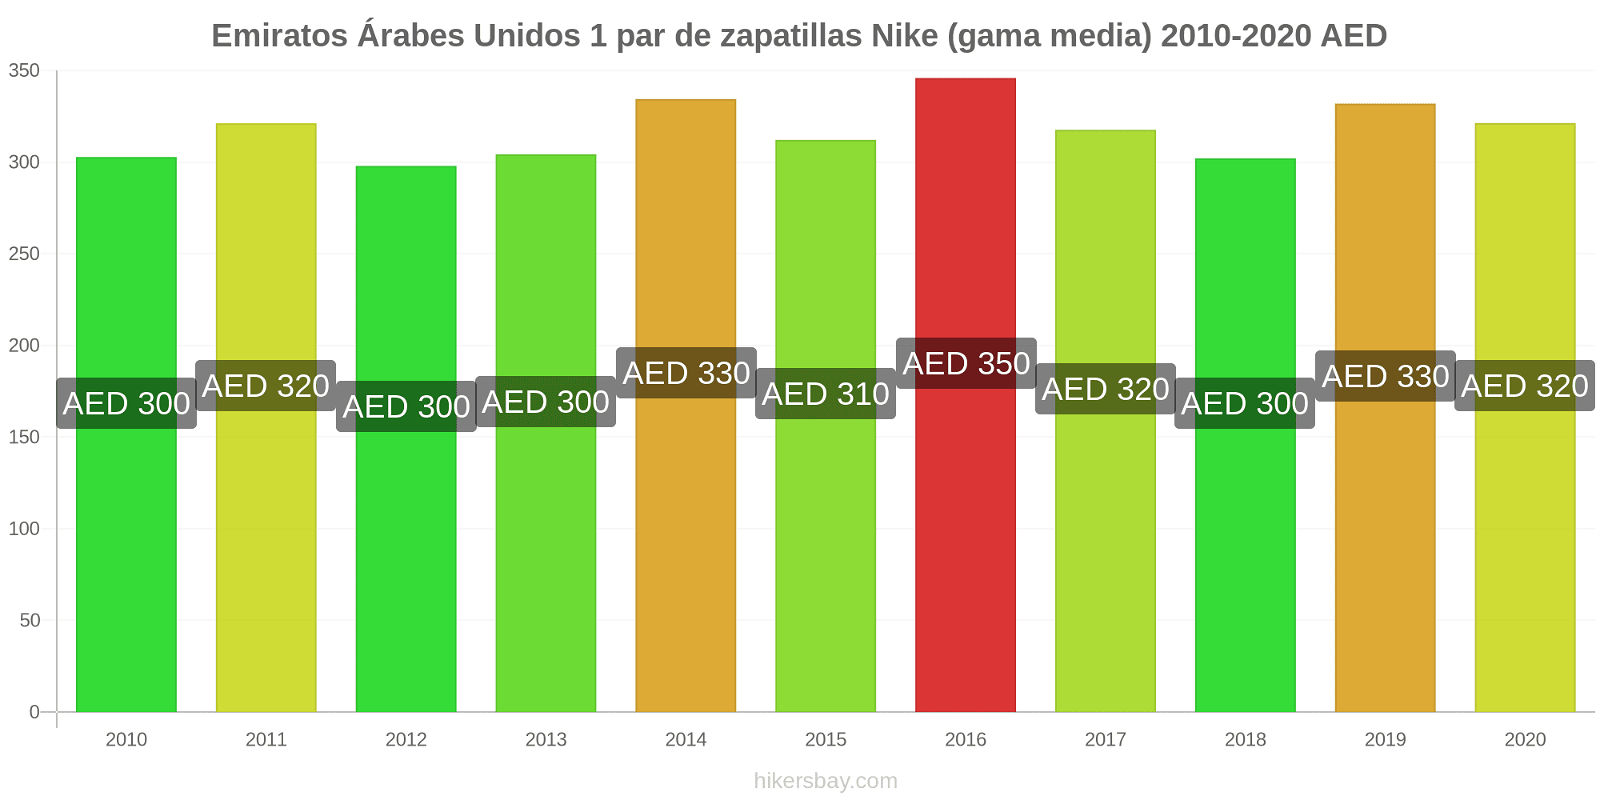 Emiratos Árabes Unidos cambios de precios 1 par de zapatillas Nike (gama media) hikersbay.com